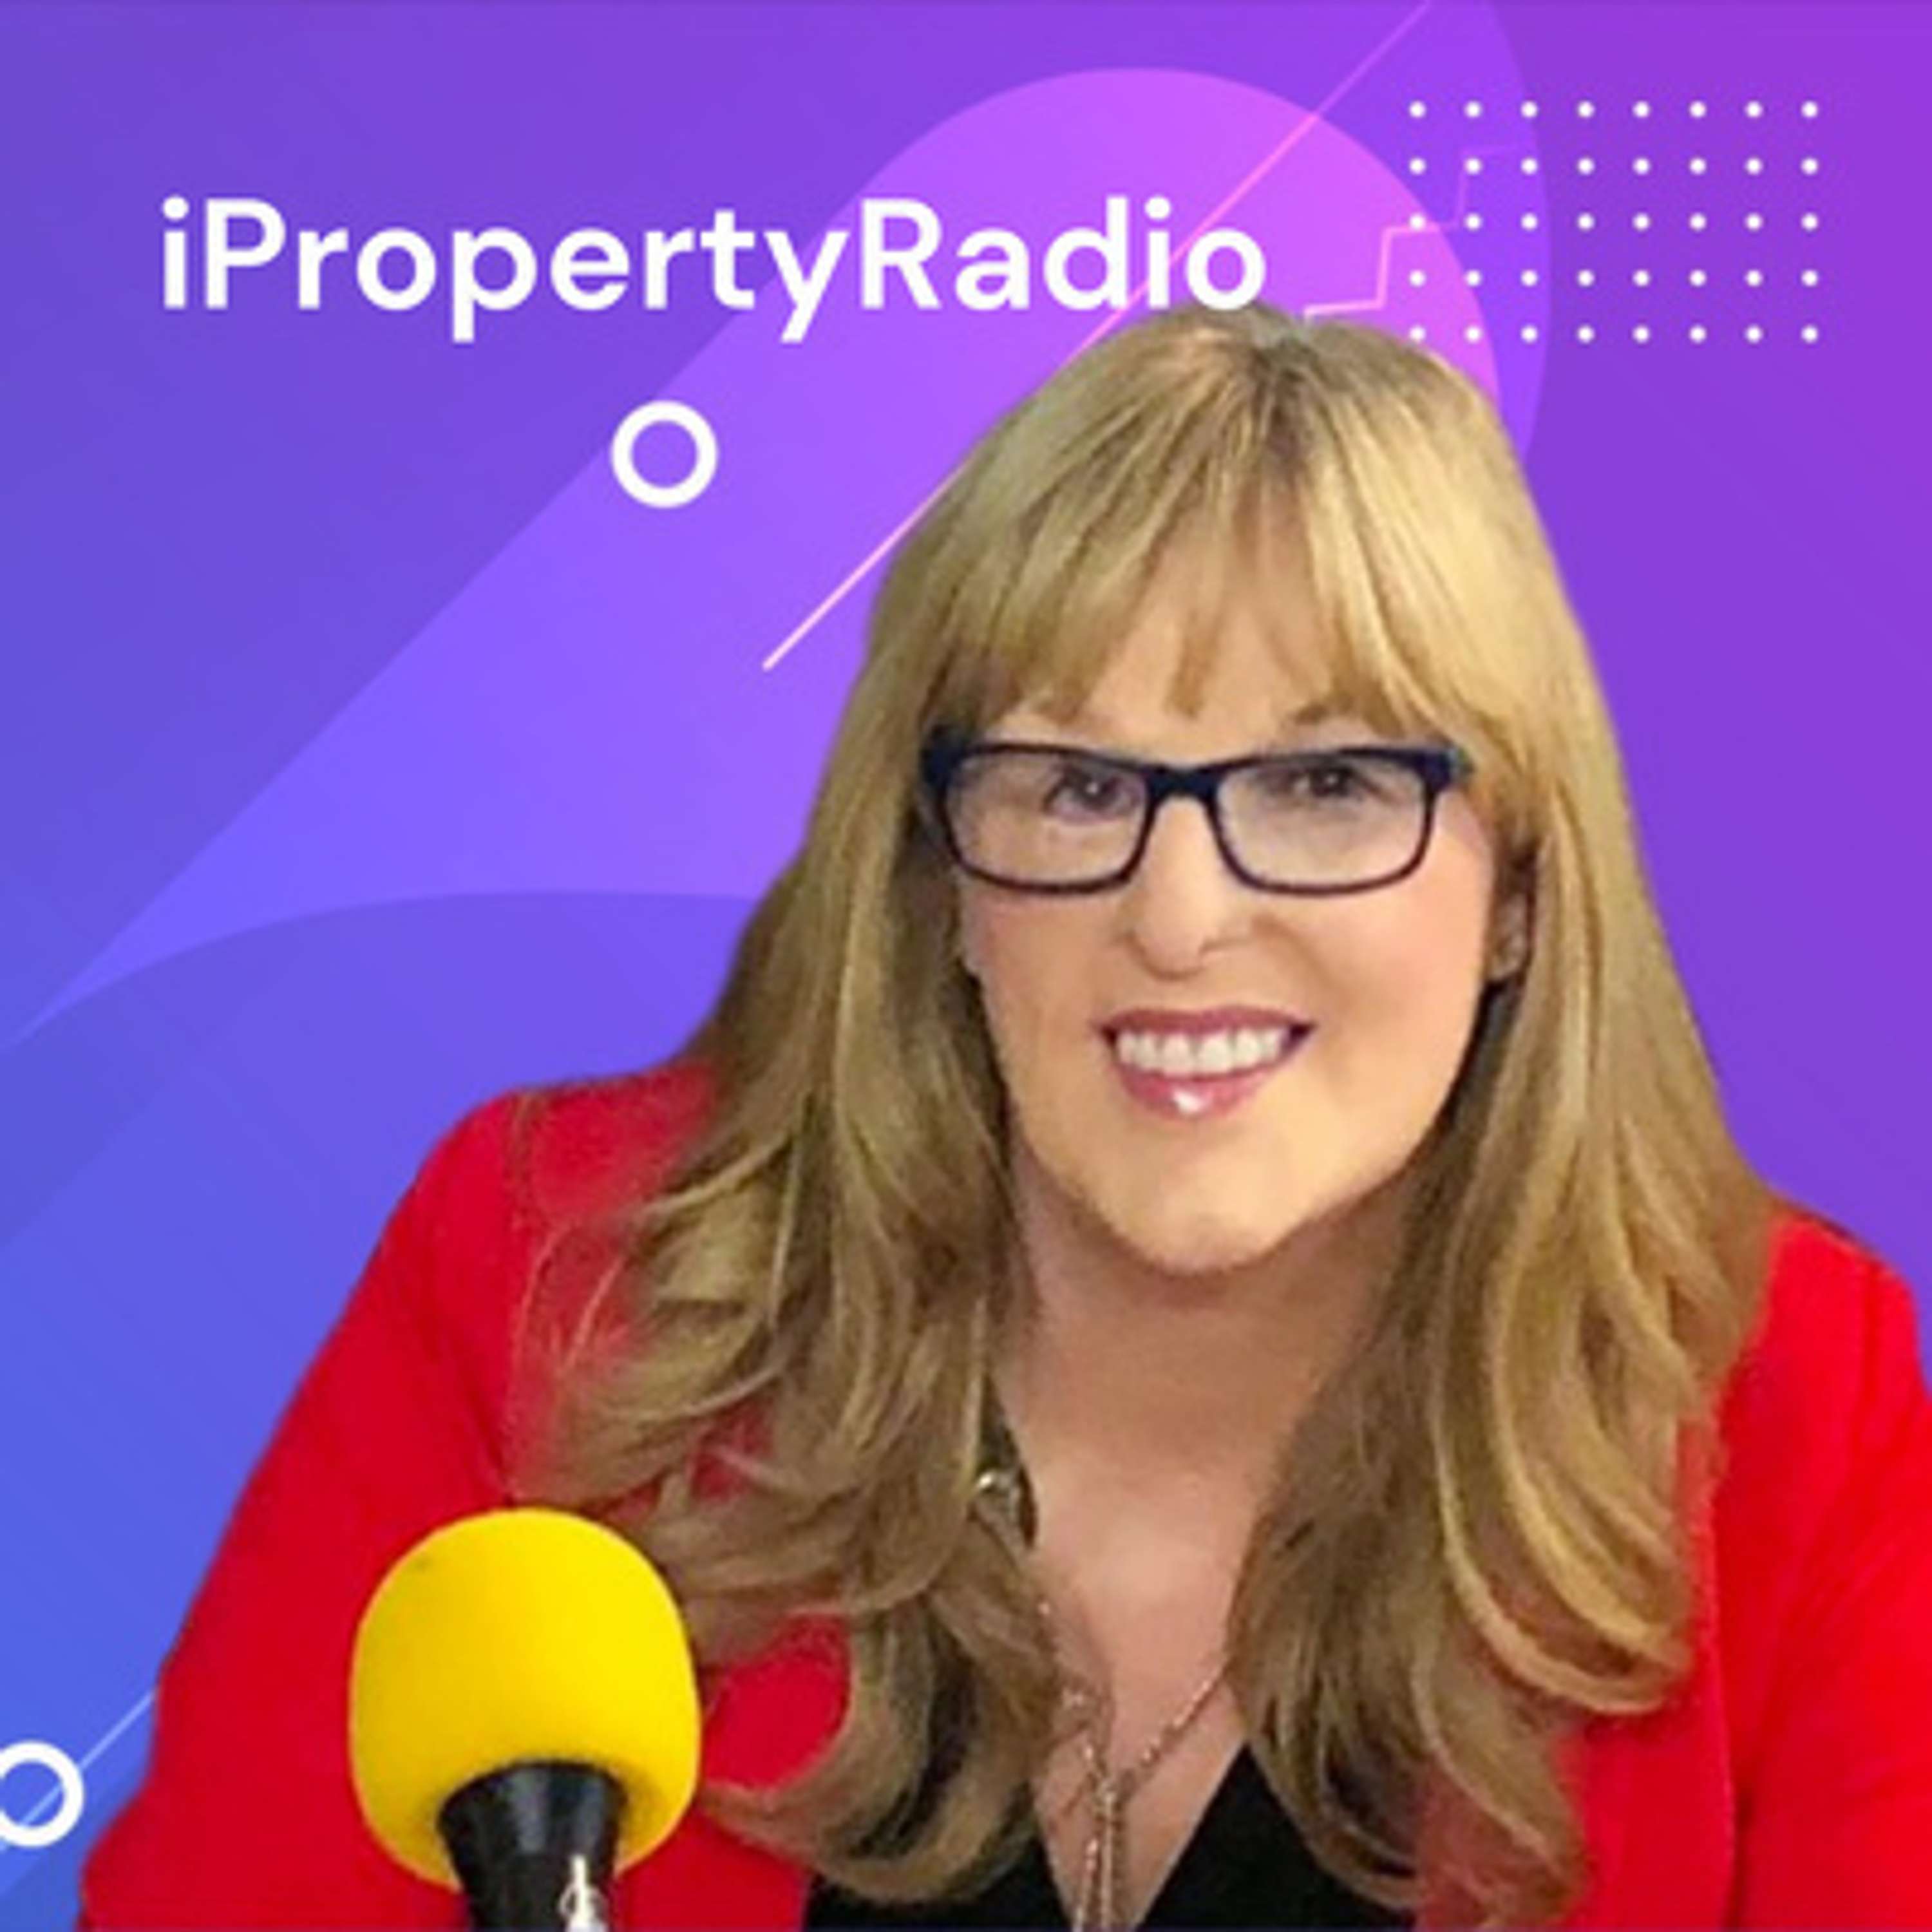 Ep.16 iPropertyRadio: Property Matters, May 7th 2019